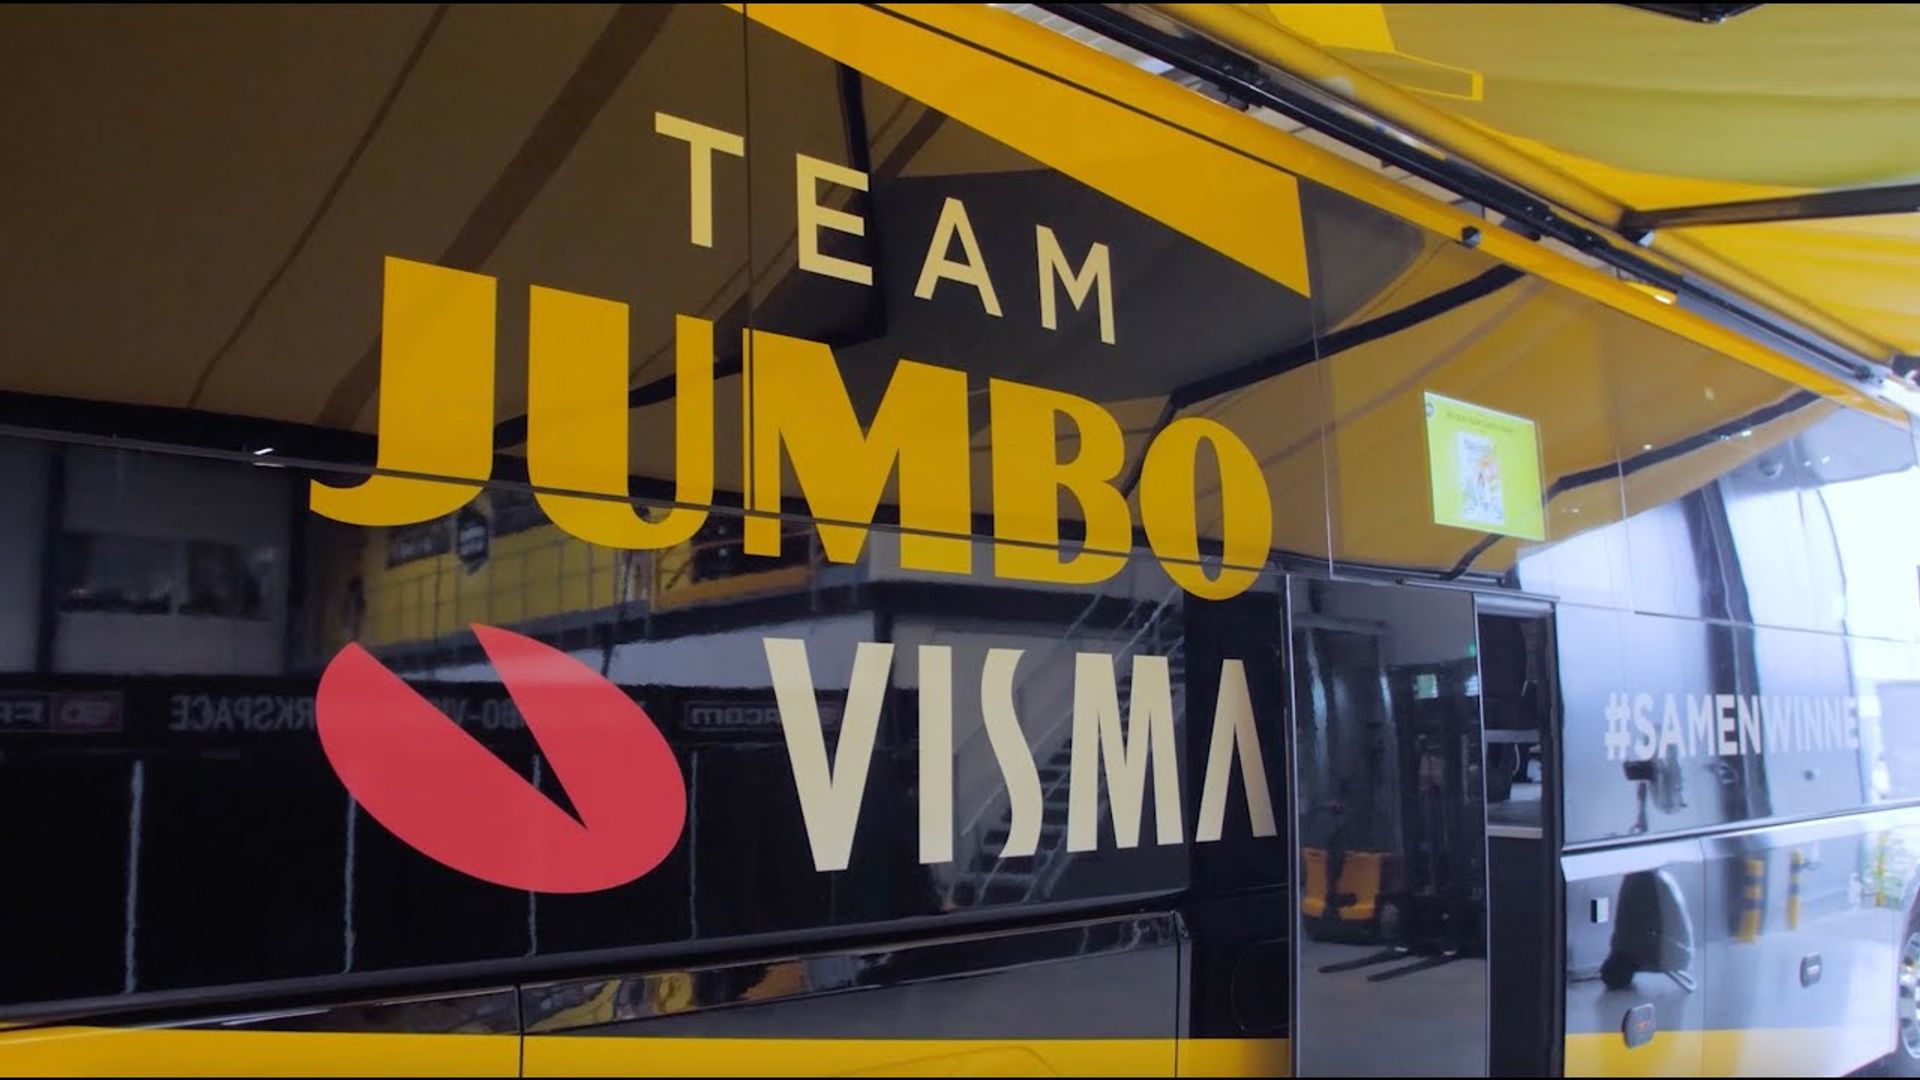 teambus Jumbo-Visma